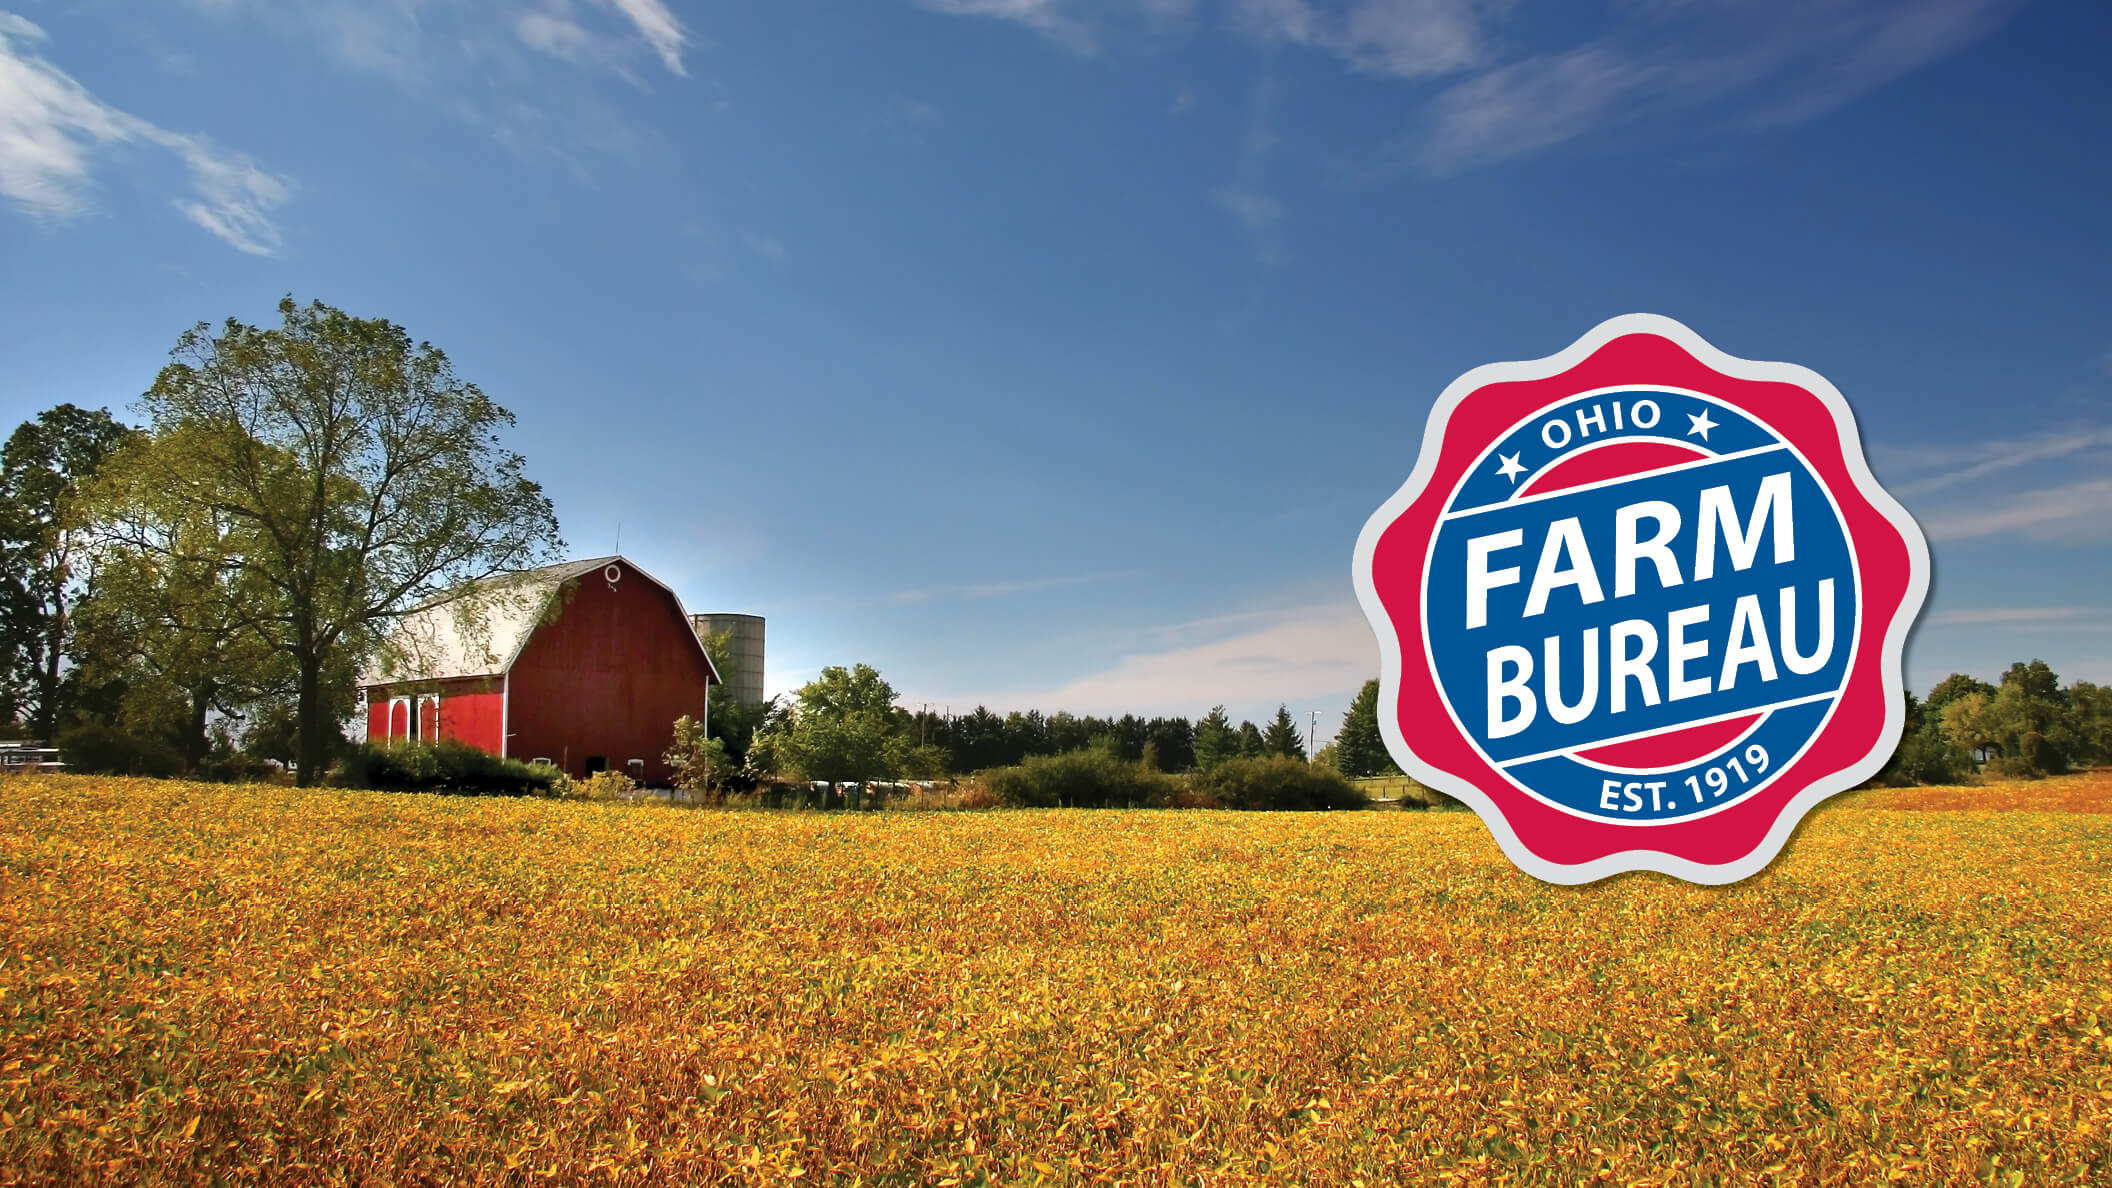 Clark County Farm Bureau Annual Meeting & Dinner Ohio Farm Bureau